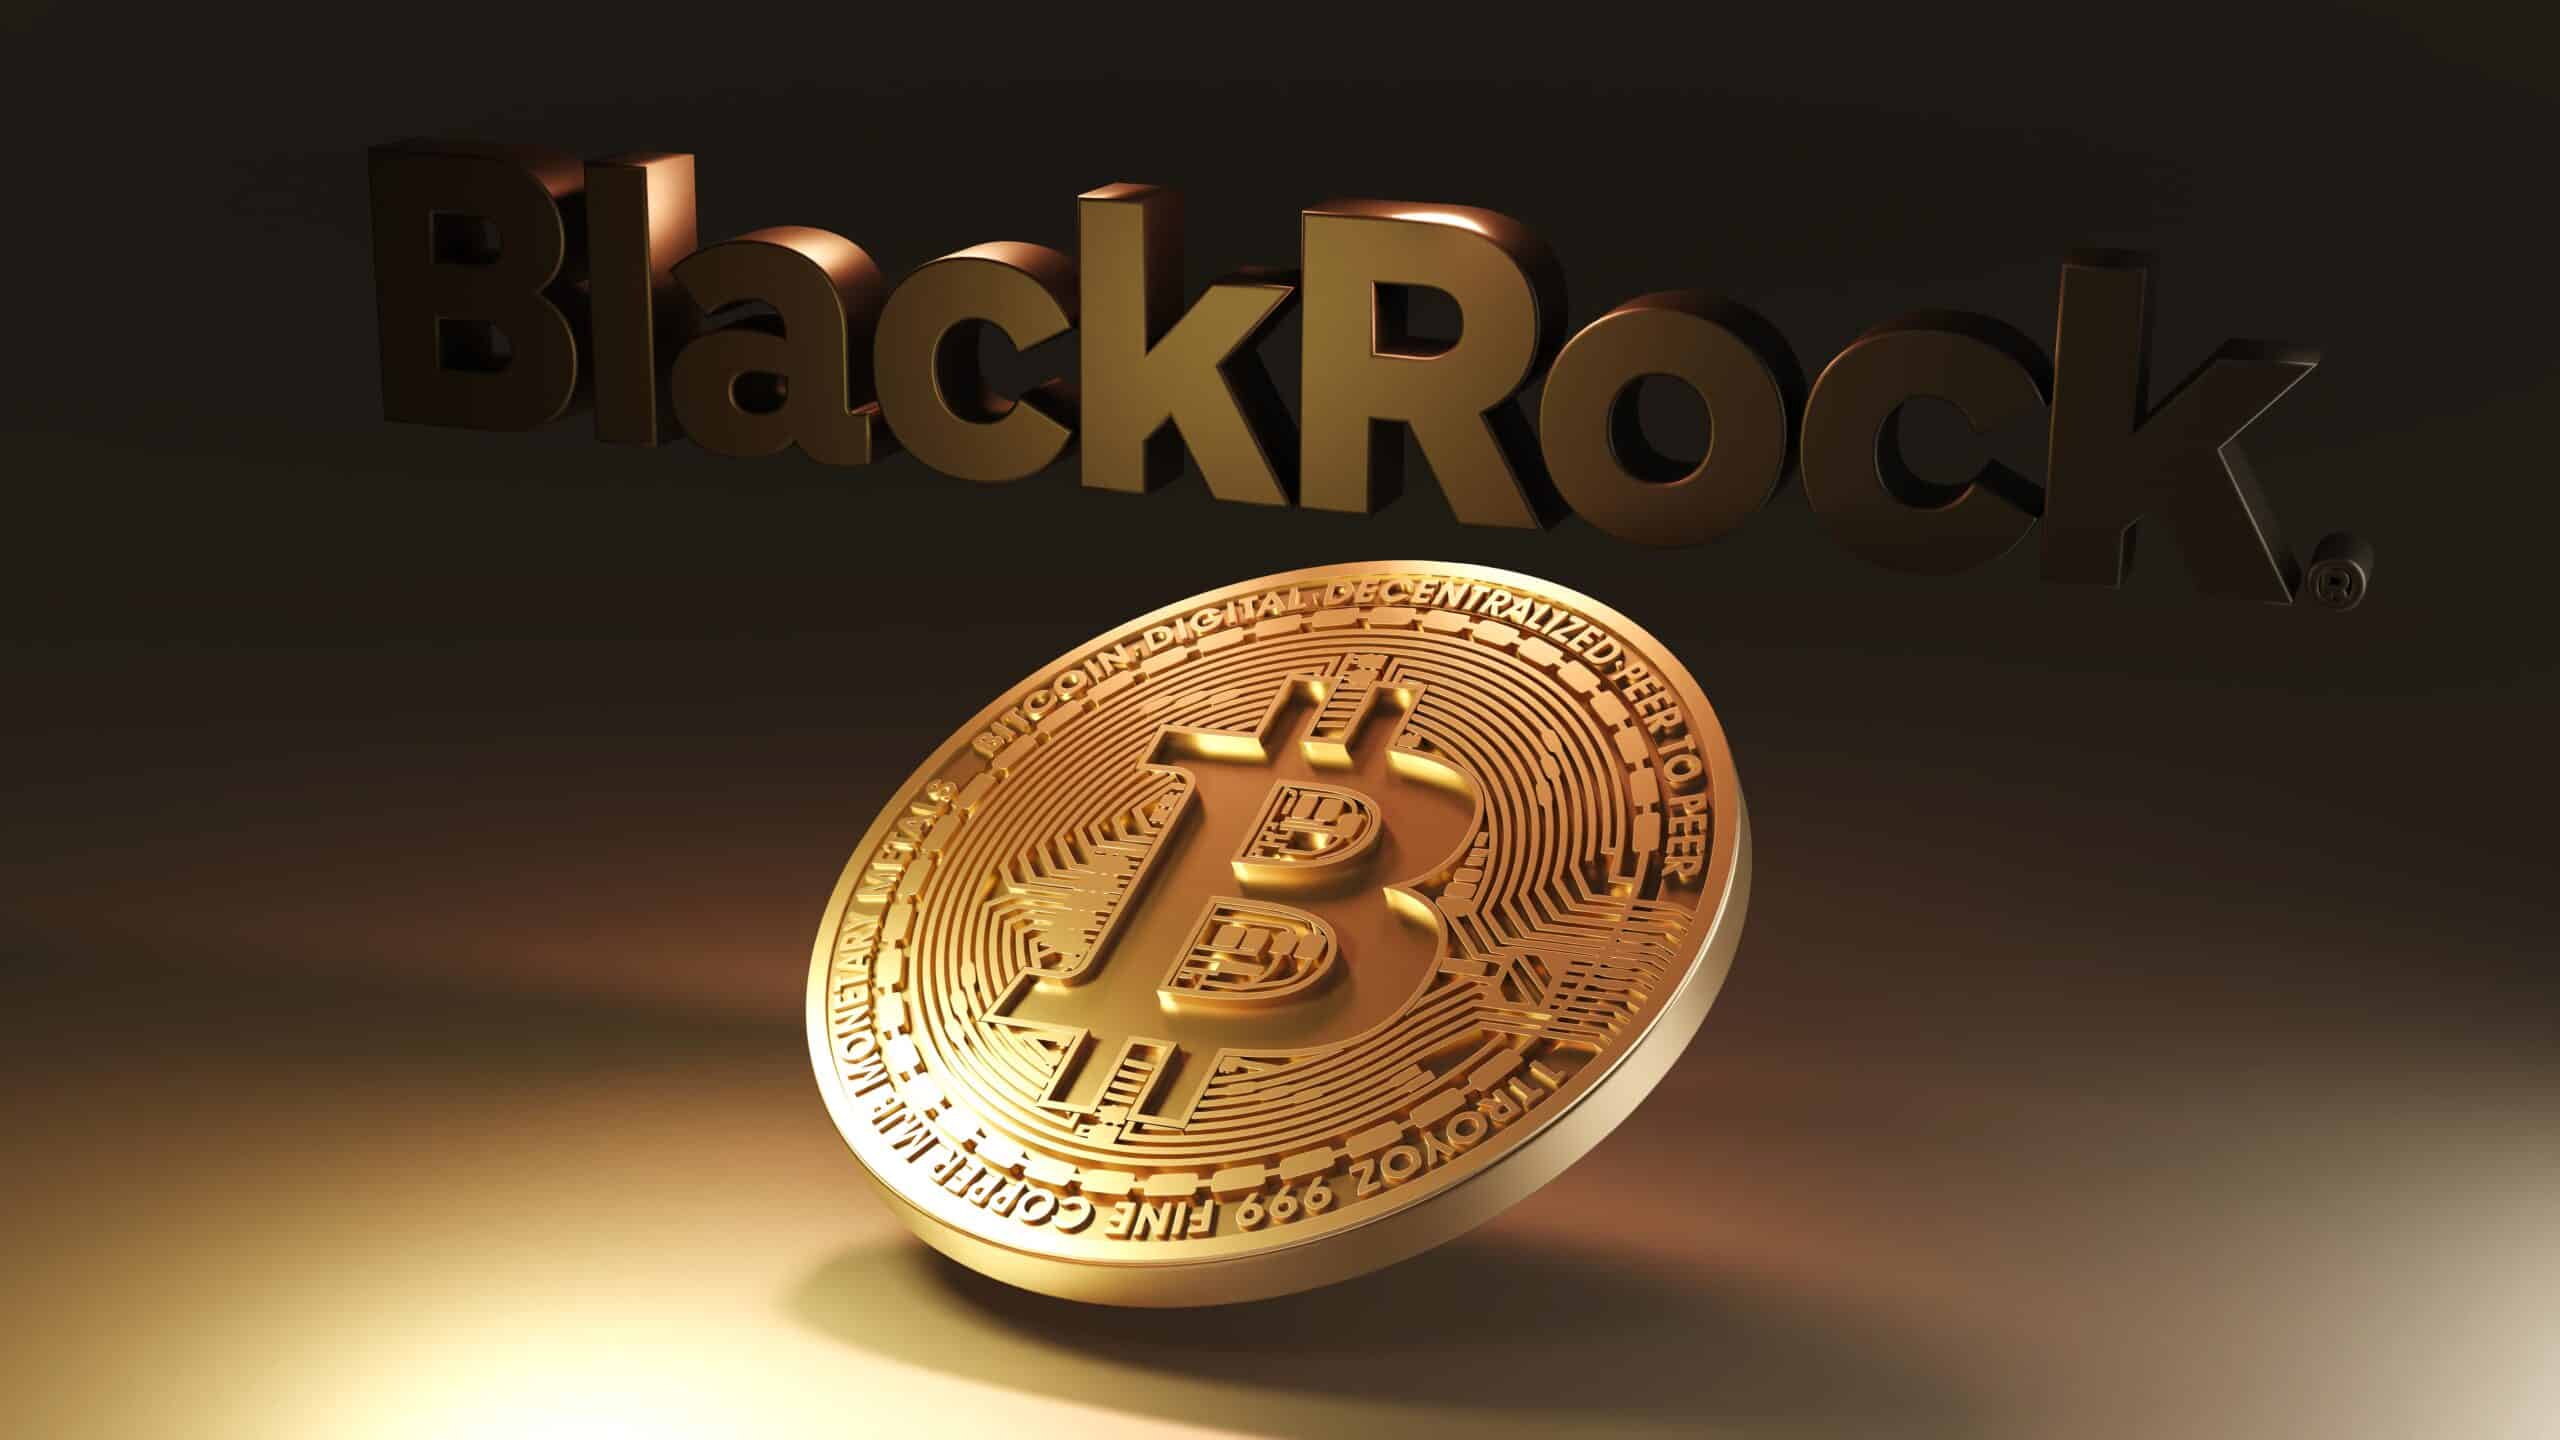 โลโก้ blackrock อยู่ด้านหลังโดยมี bitcoin สีทองอยู่เบื้องหน้า